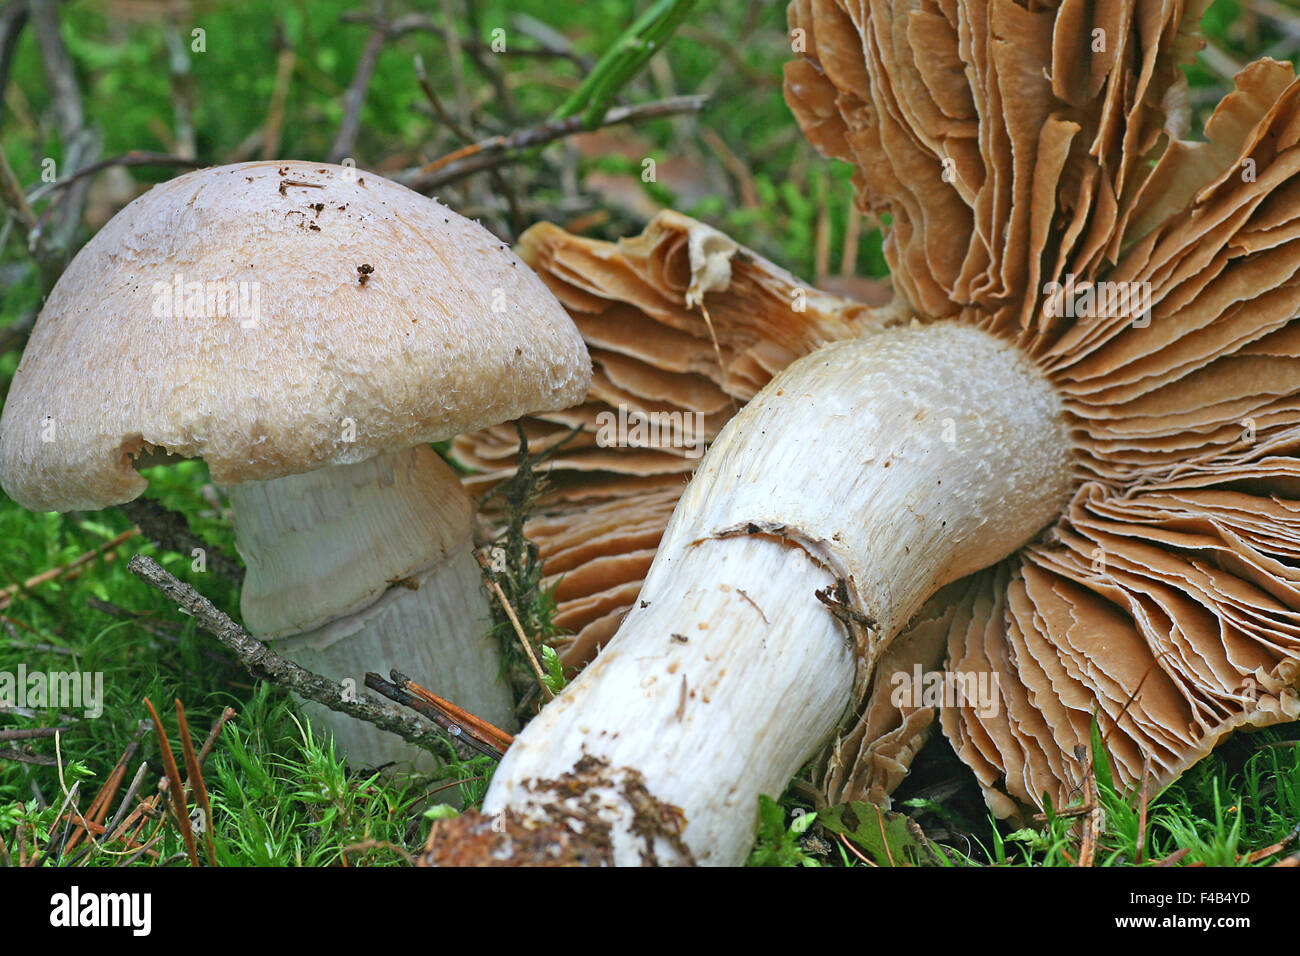 gypsy mushroom Stock Photo